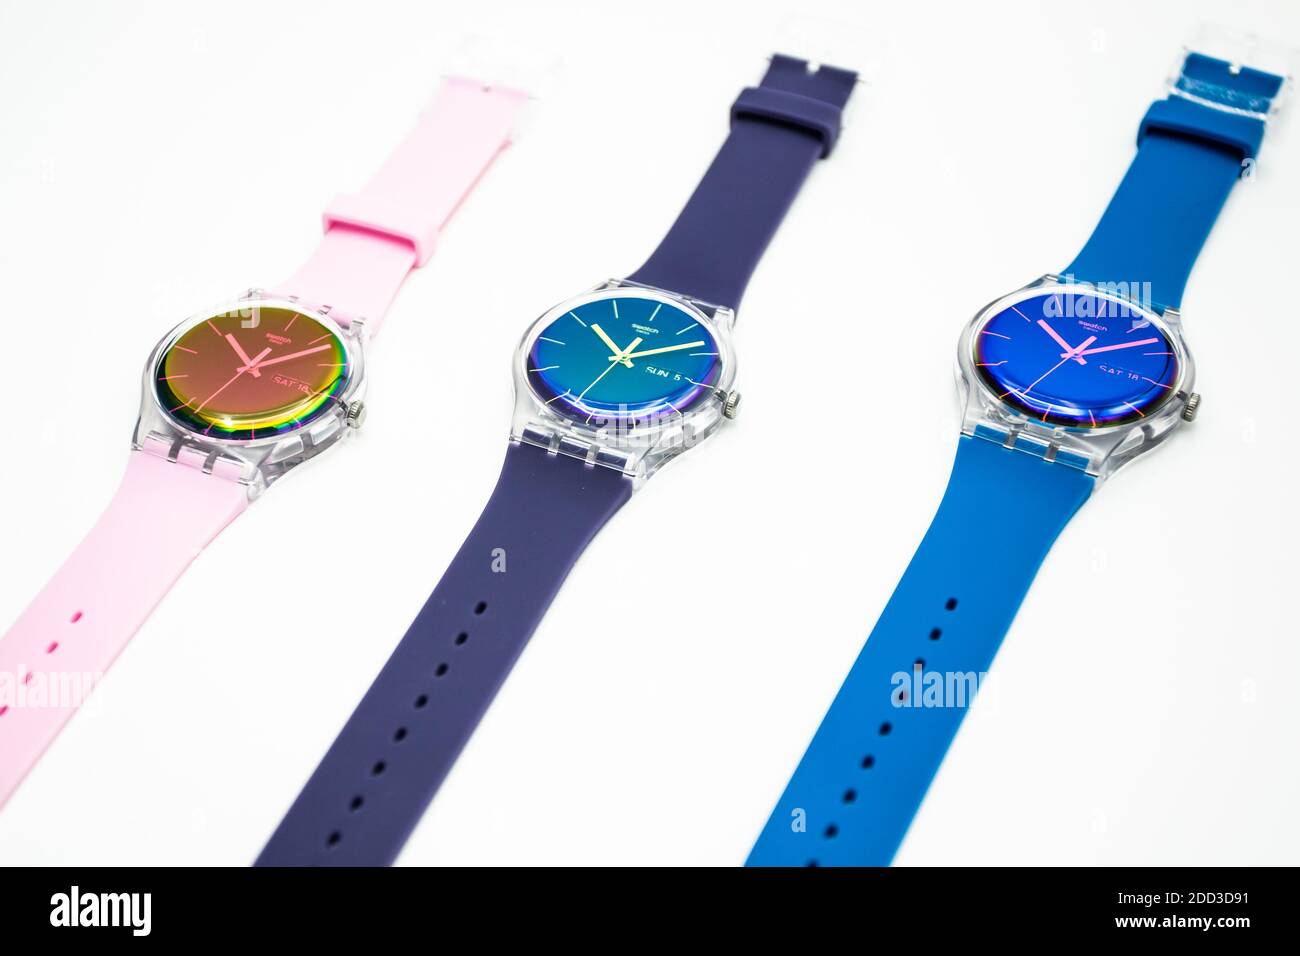 París, Francia 07.10.2020 - tres relojes swatch swiss hizo reloj de cuarzo  en blanco Fotografía de stock - Alamy